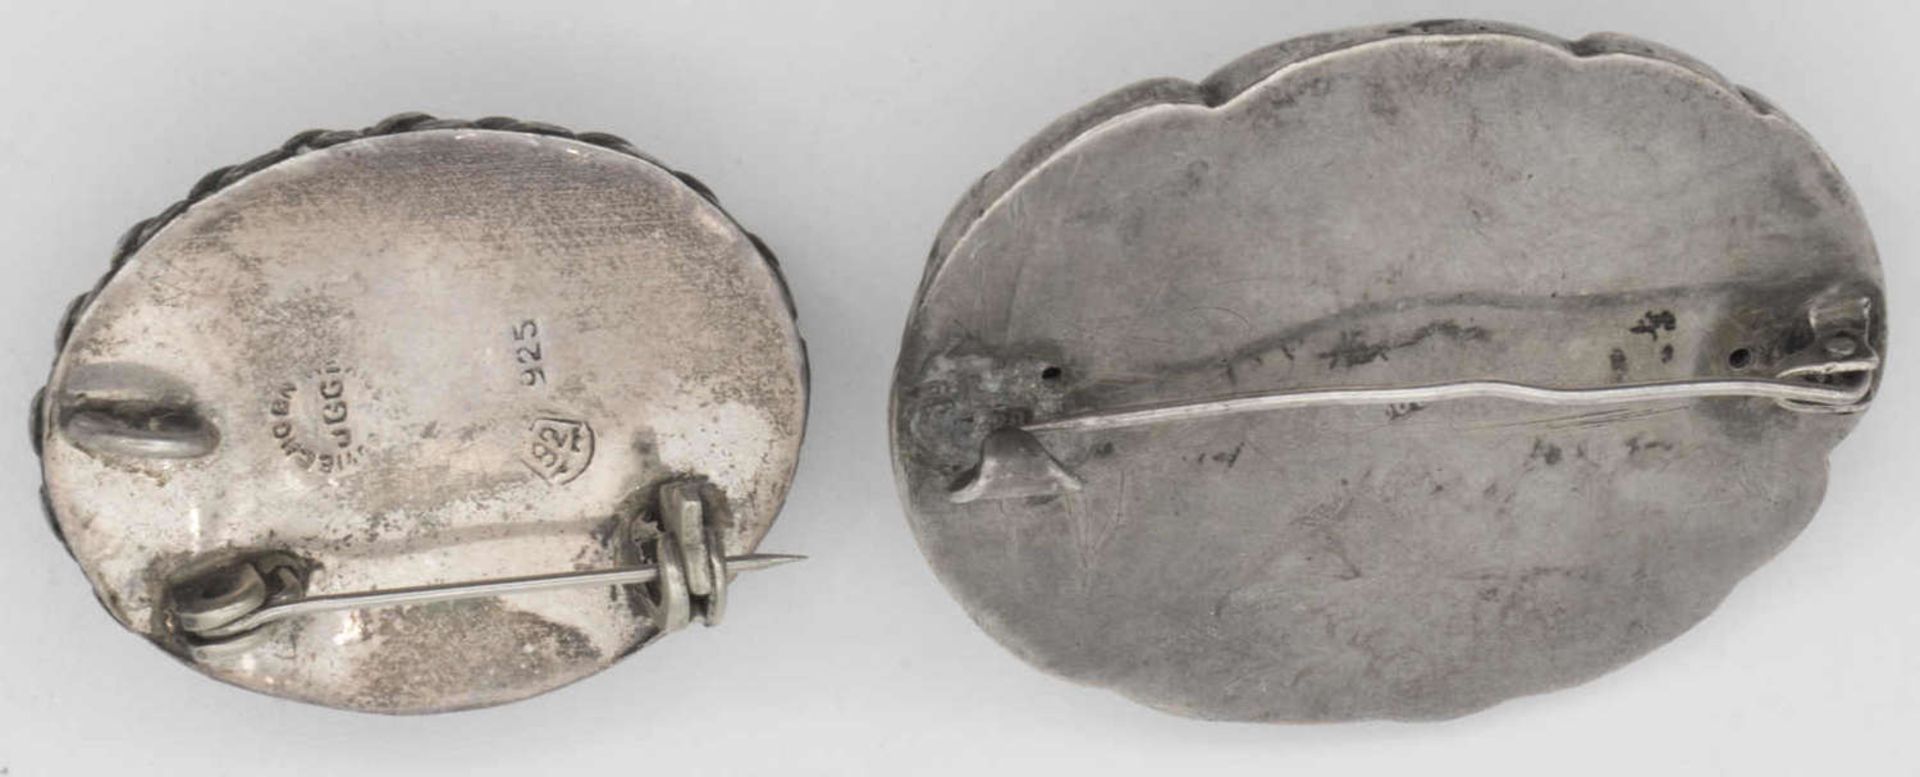 Zwei Silberbroschen, jeweils mit einem Stein besetzt. Beide gepunzt. Gesamtgewicht: ca. 21,3 g. - Bild 2 aus 2